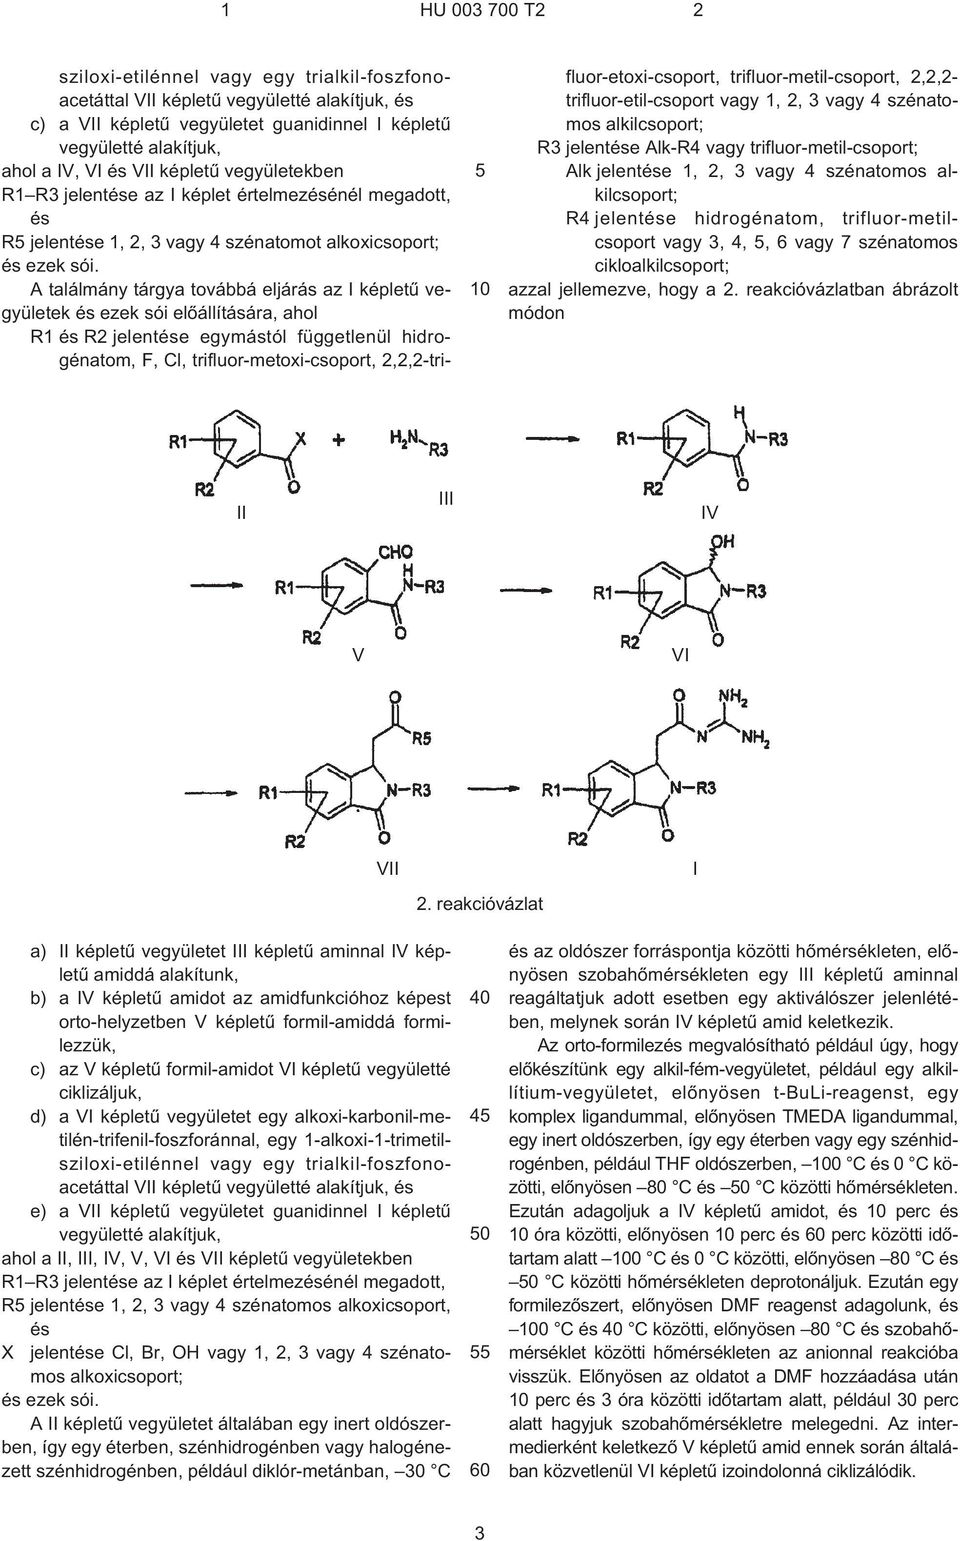 A találmány tárgya továbbá eljárás az képletû vegyületek és ezek sói elõállítására, ahol F, Cl, trifluor-metoxi-csoport, 2,2,2-trifluor-etoxi-csoport, trifluor-metil-csoport, 2,2,2-